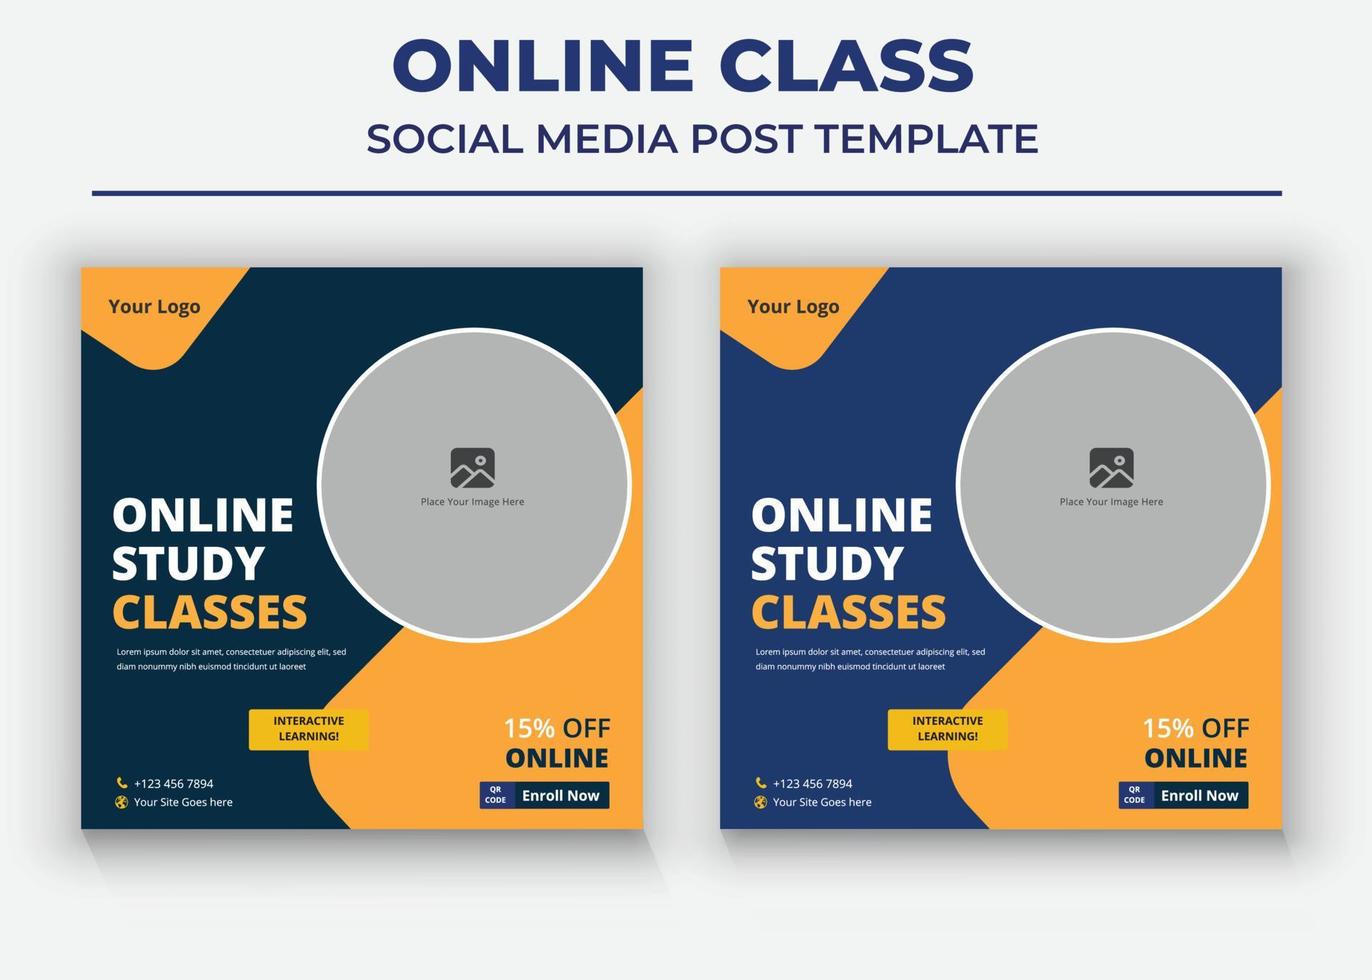 online business class poster, online class social media post en flyer vector